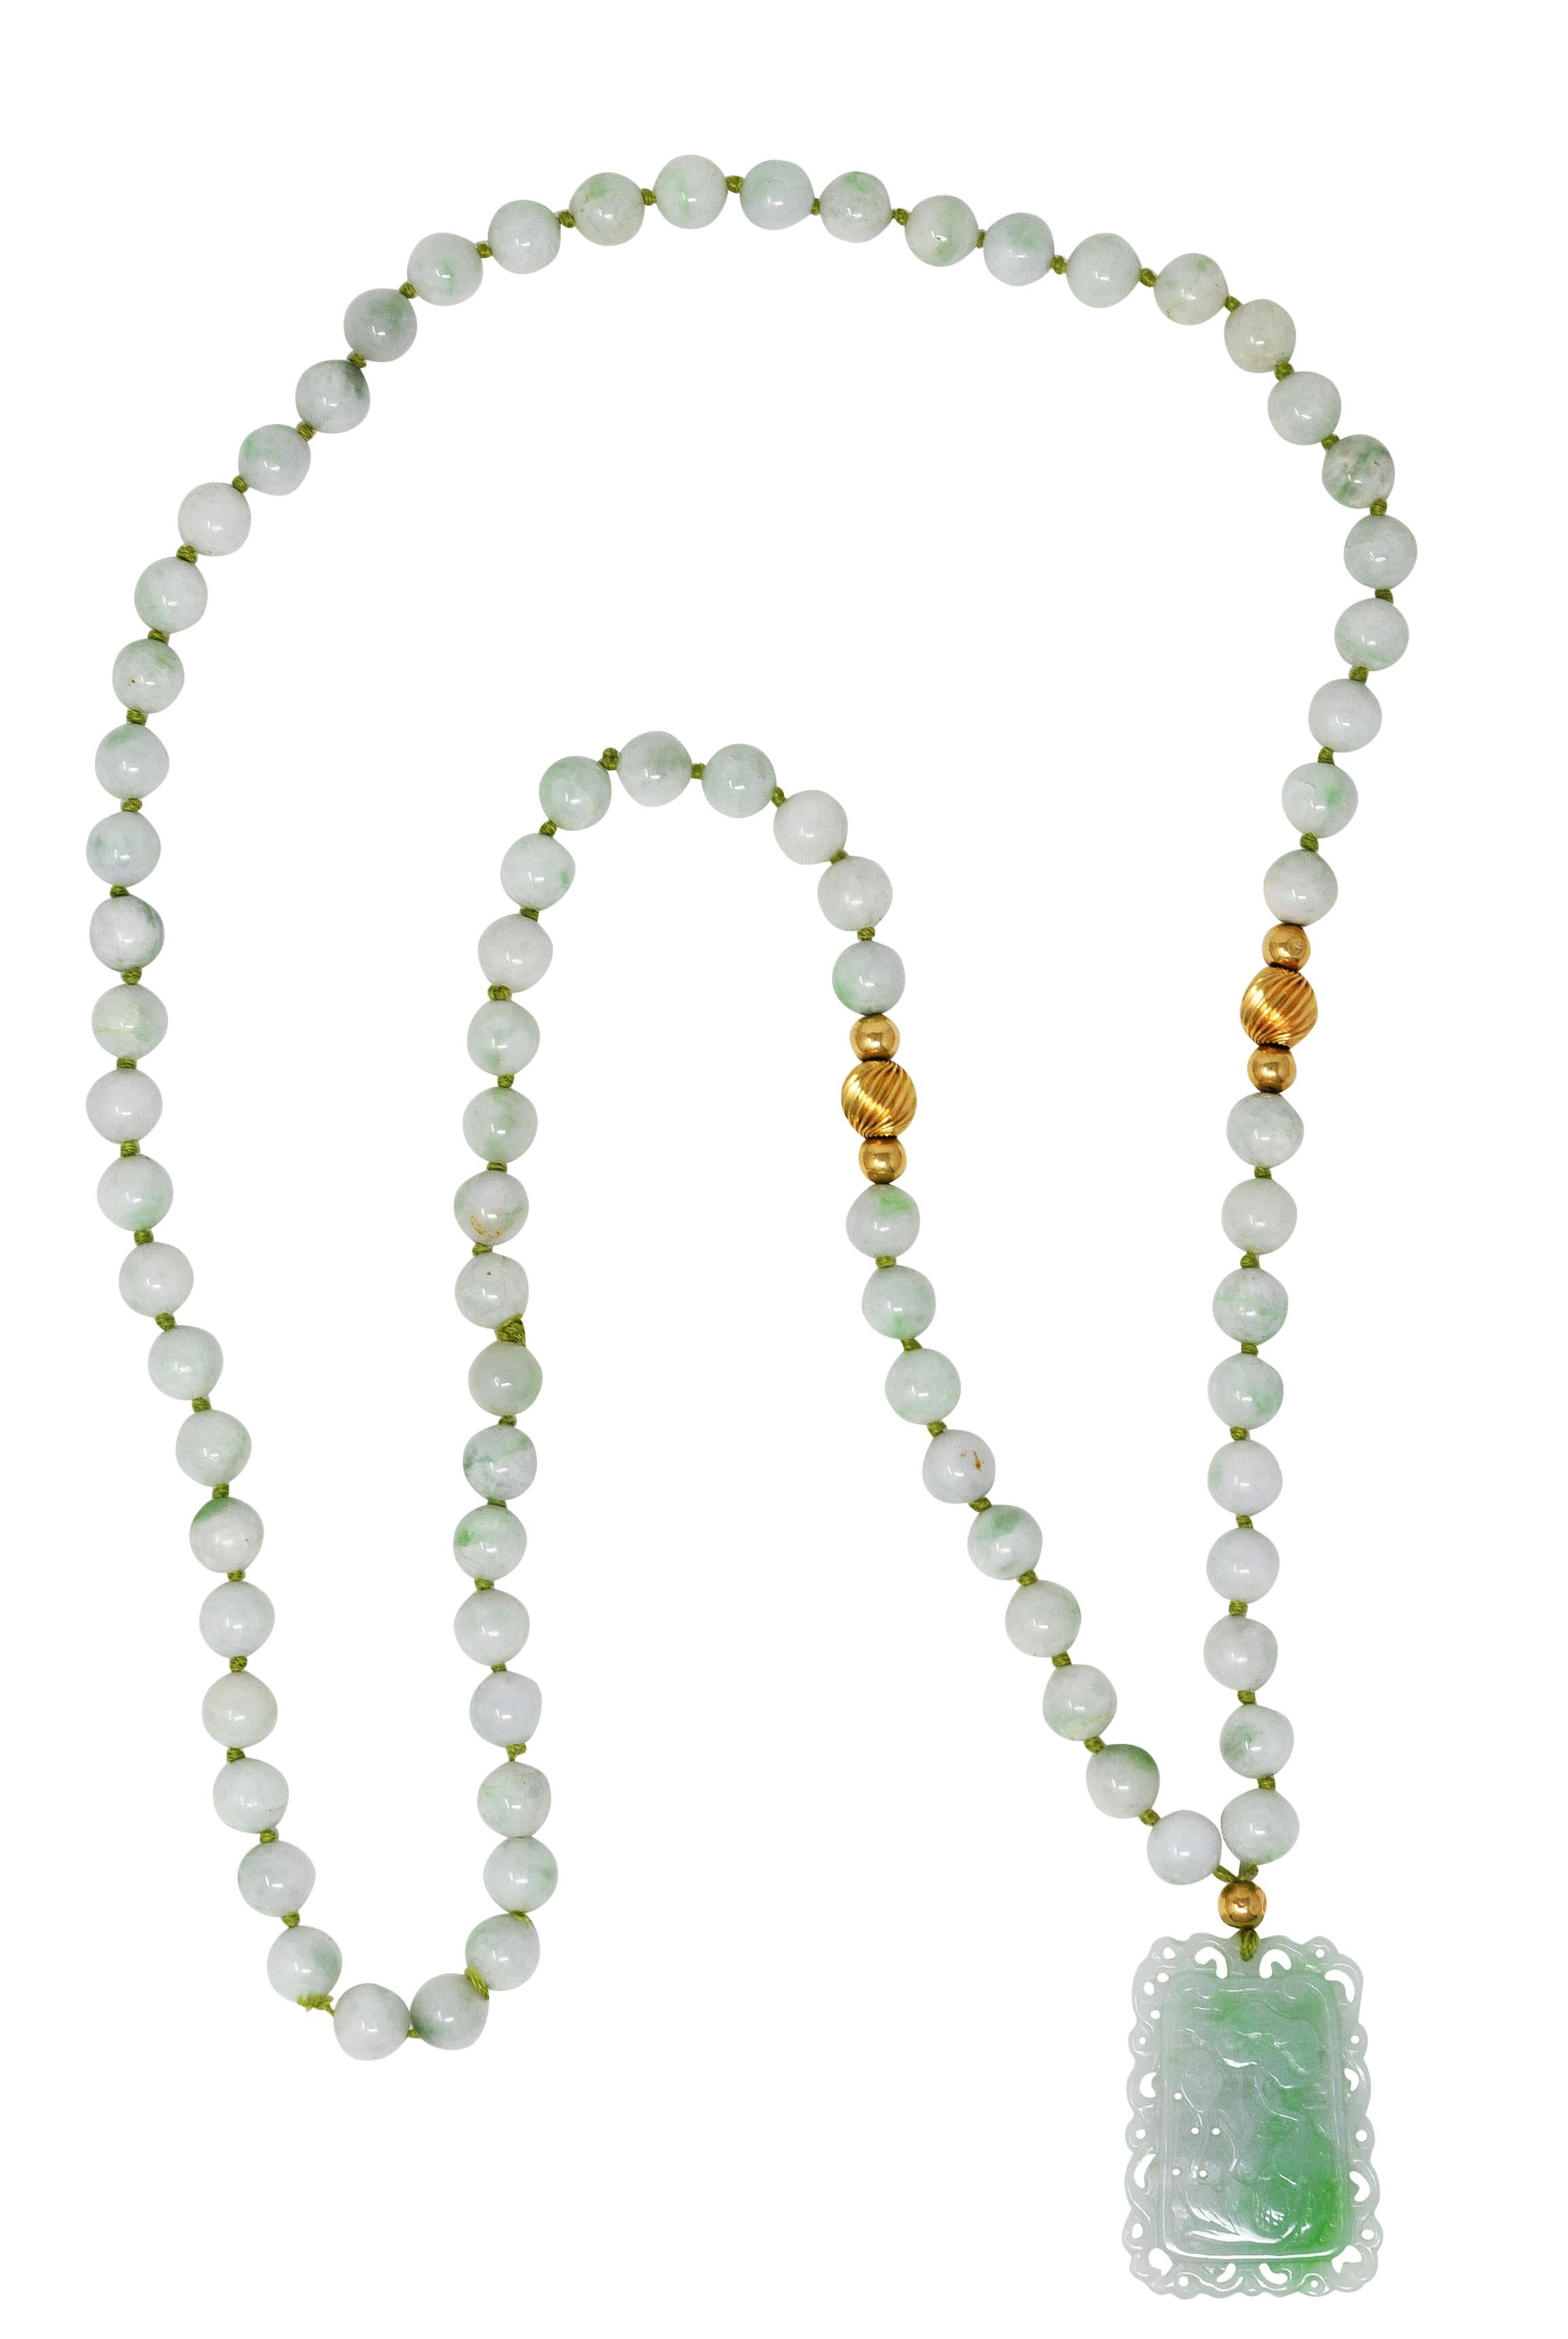 Design/One est une Corde de soie nouée, enfilée de perles rondes de jade de 9,0 mm et suspendue à un pendentif en jade sculpté. Vert bleuté très clair translucide avec des marbrures blanches et vertes moyennes - naturel sans indication